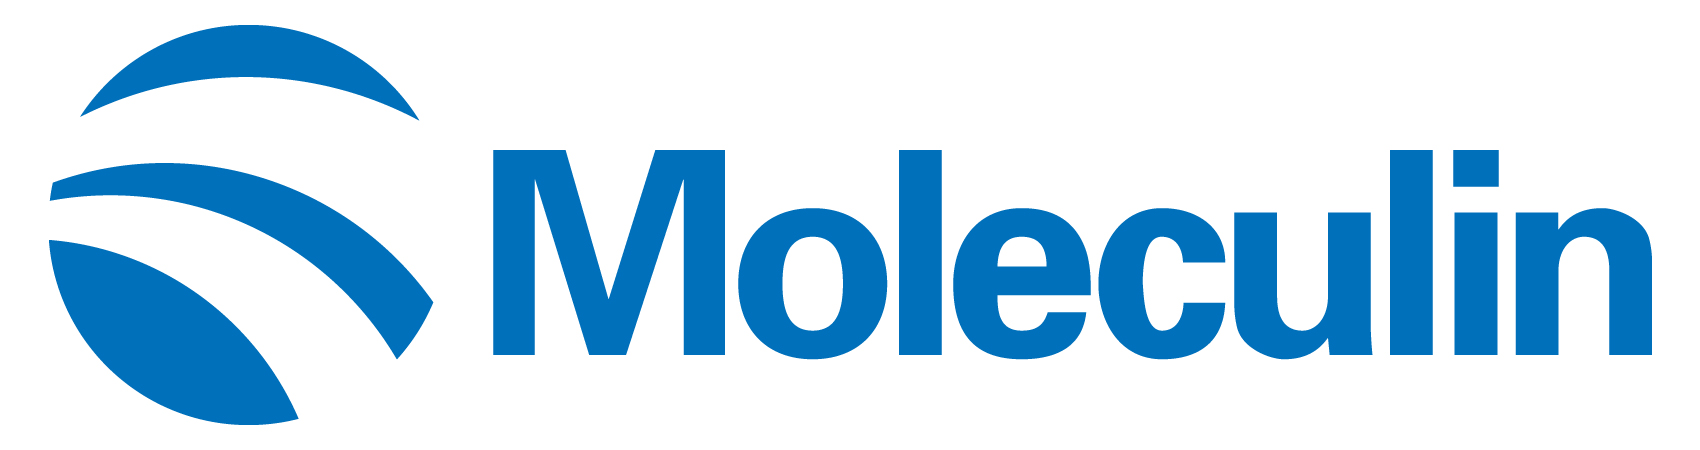 moleculin-logo_horiza34.jpg